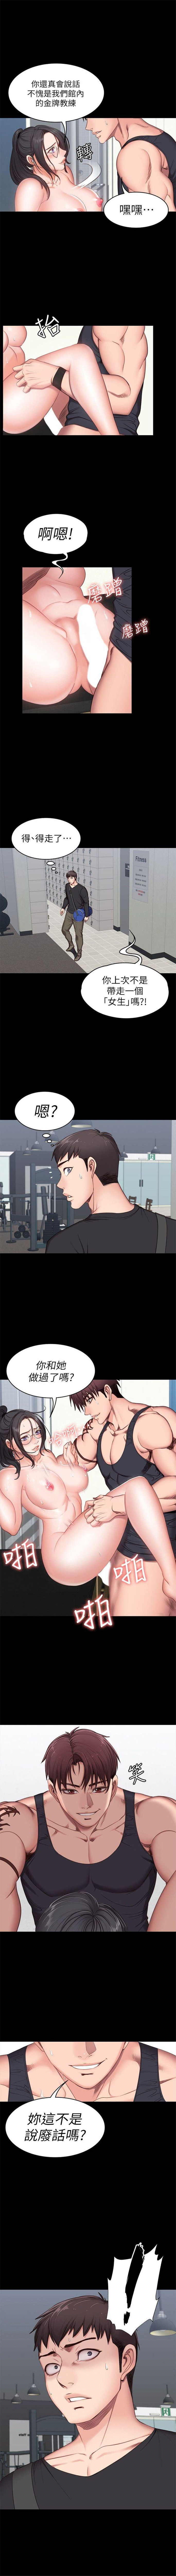 健身教练1-26 中文翻译 （更新中） 30